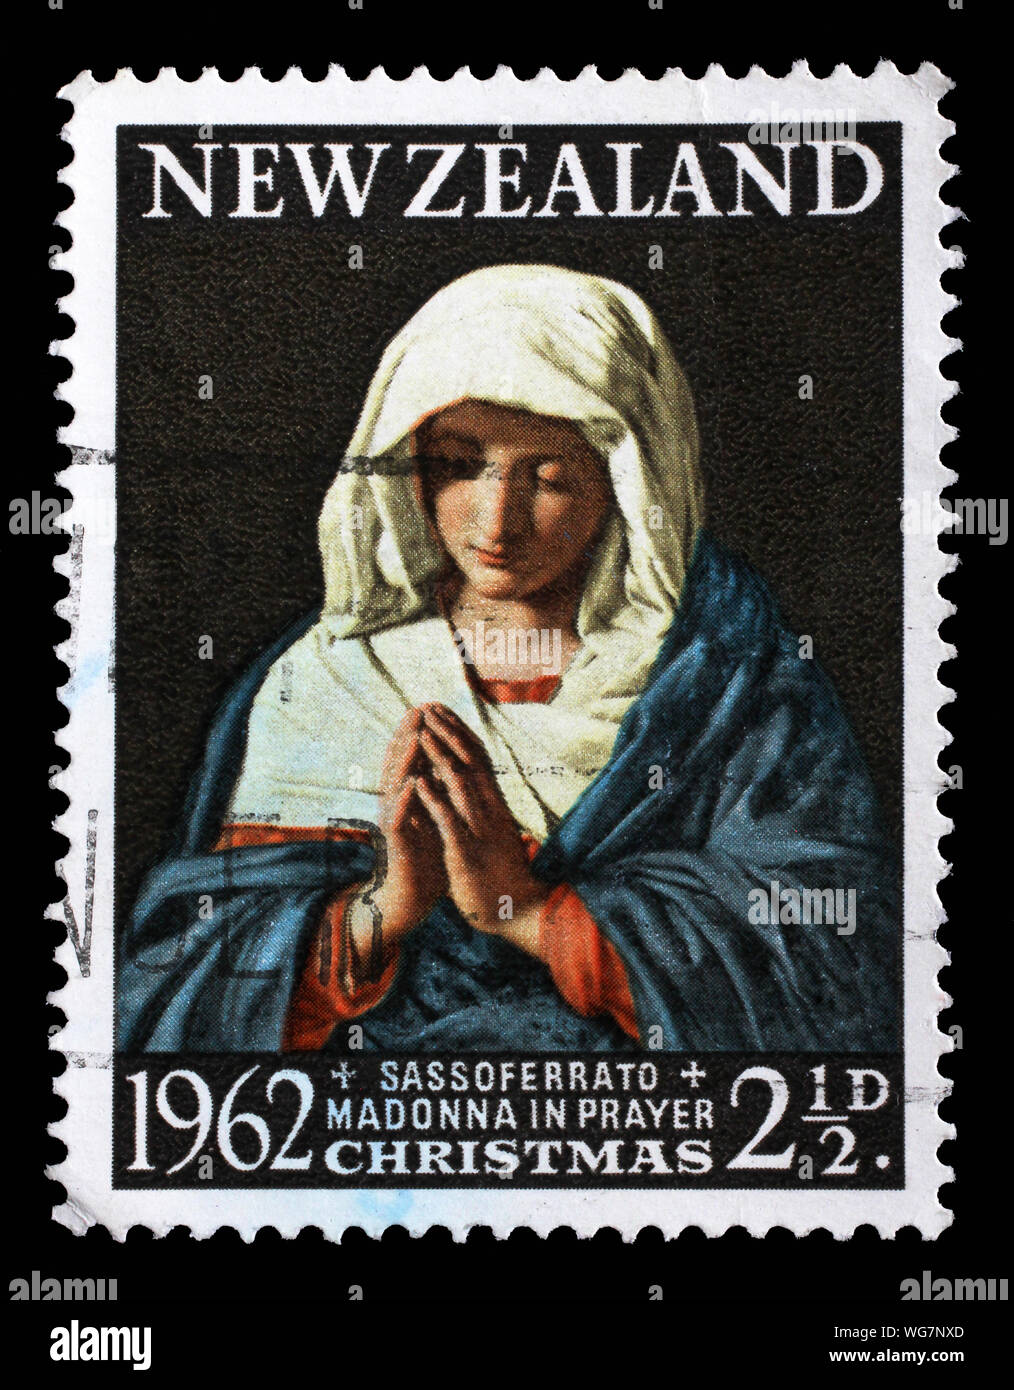 Timbre émis en Nouvelle-Zélande montre priant Madonna, série Noël, vers 1962. Banque D'Images